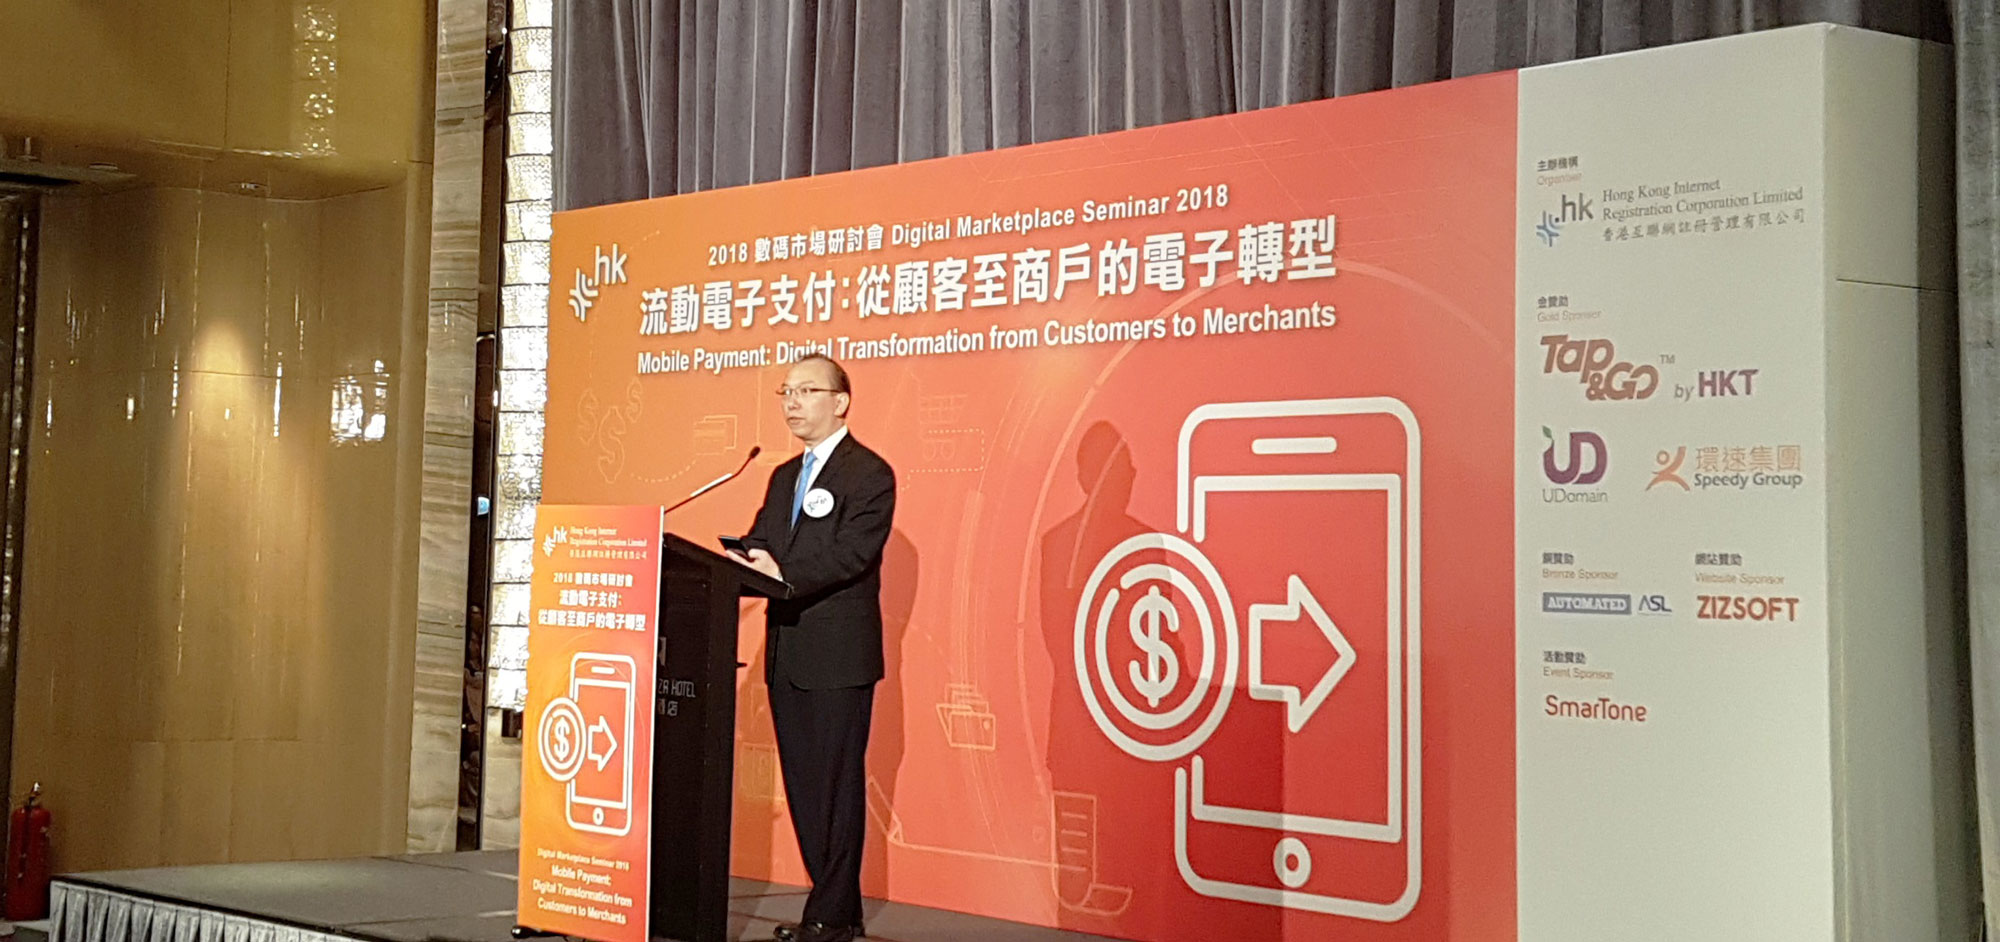 政府资讯科技总监林伟乔先生于数码市场研讨会「流动电子支付：从顾客至商户的电子转型」上致辞